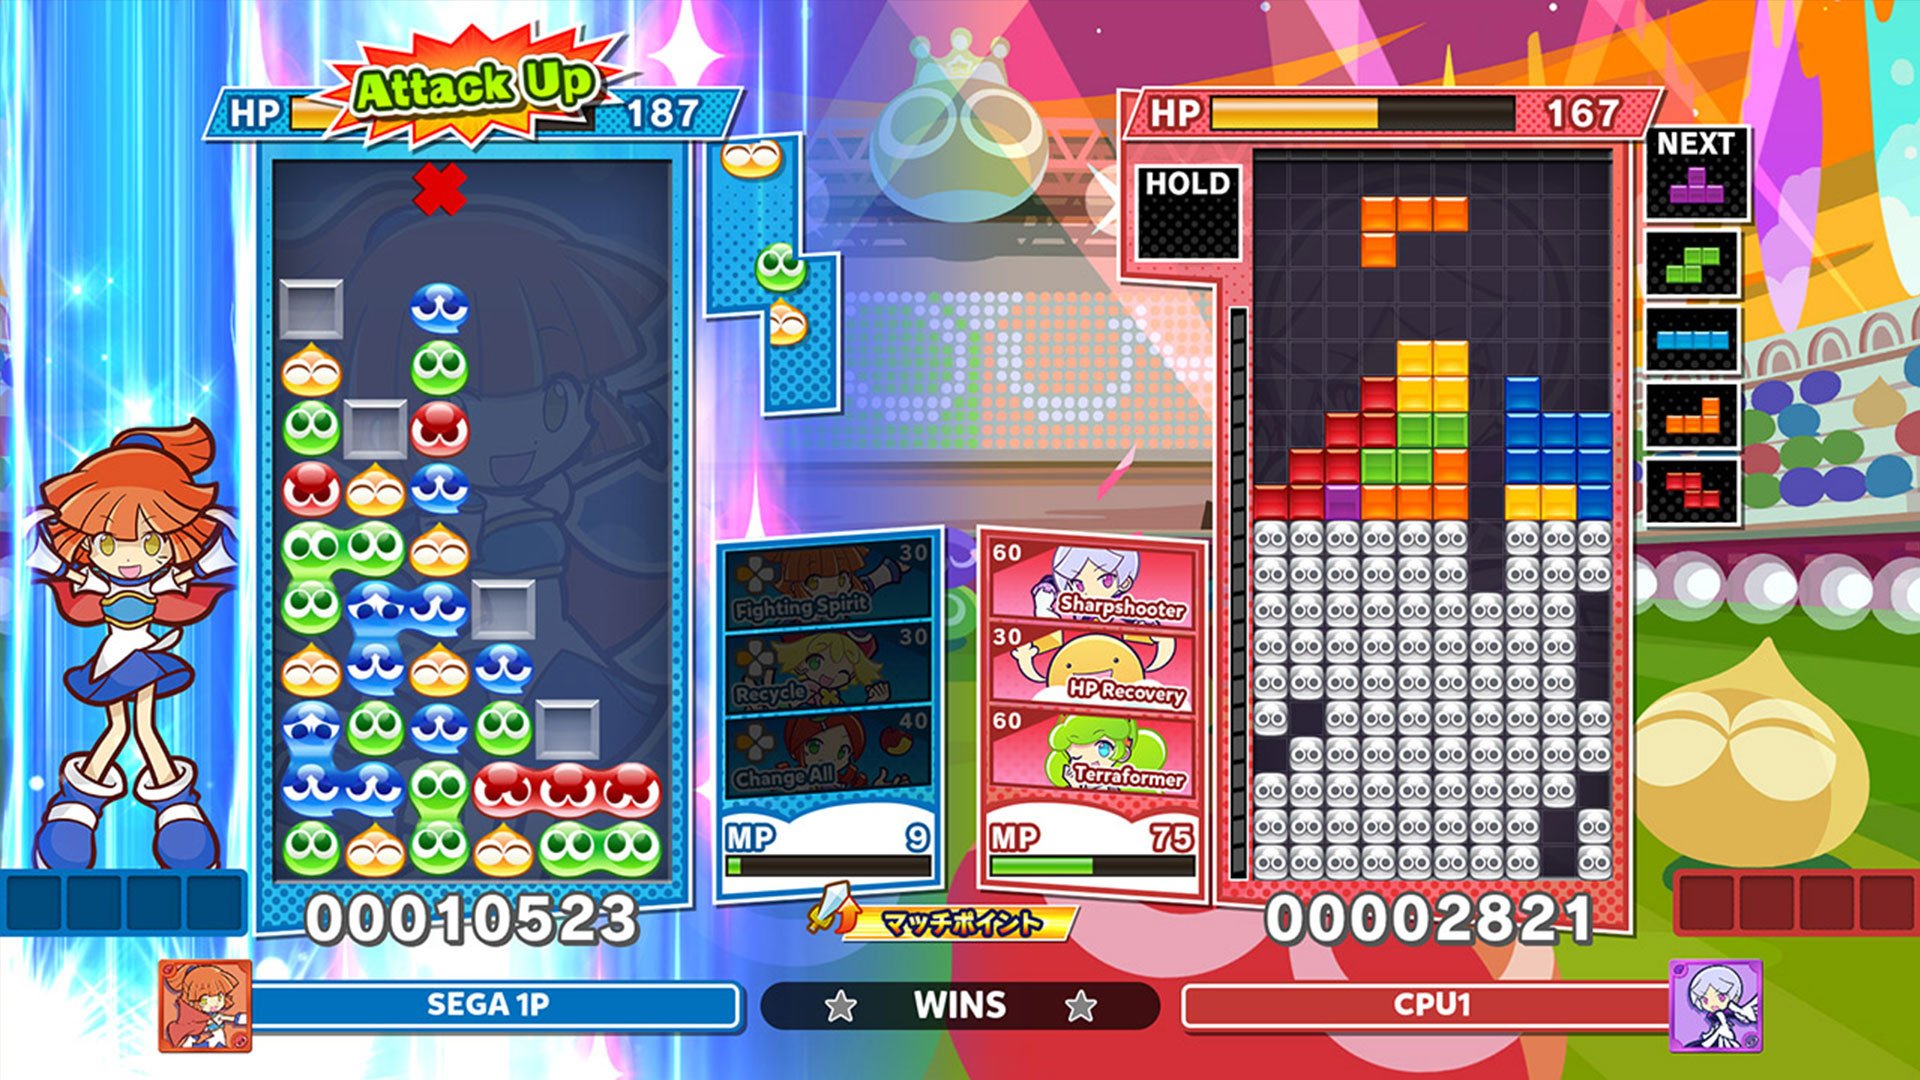 Puyo Puyo Tetris 2 - PS5 - VNS Games - Seu próximo jogo está aqui!